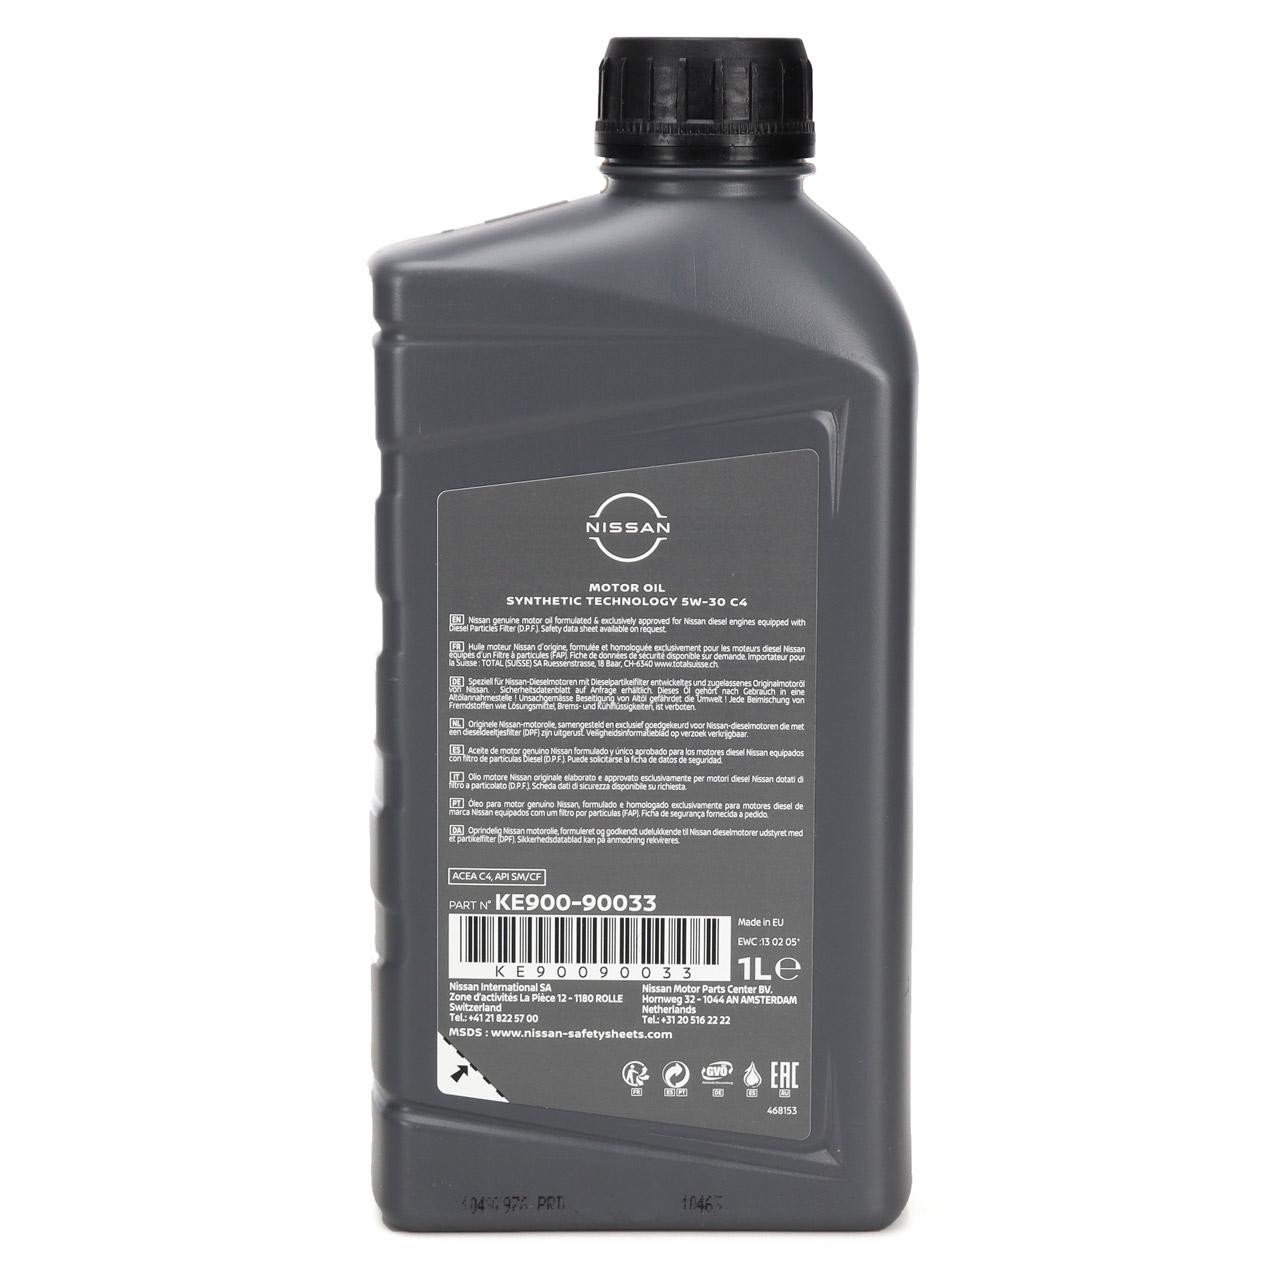 Olio Nissan Dpf 5W30 C4 sintetico (confezione da 1 litro)